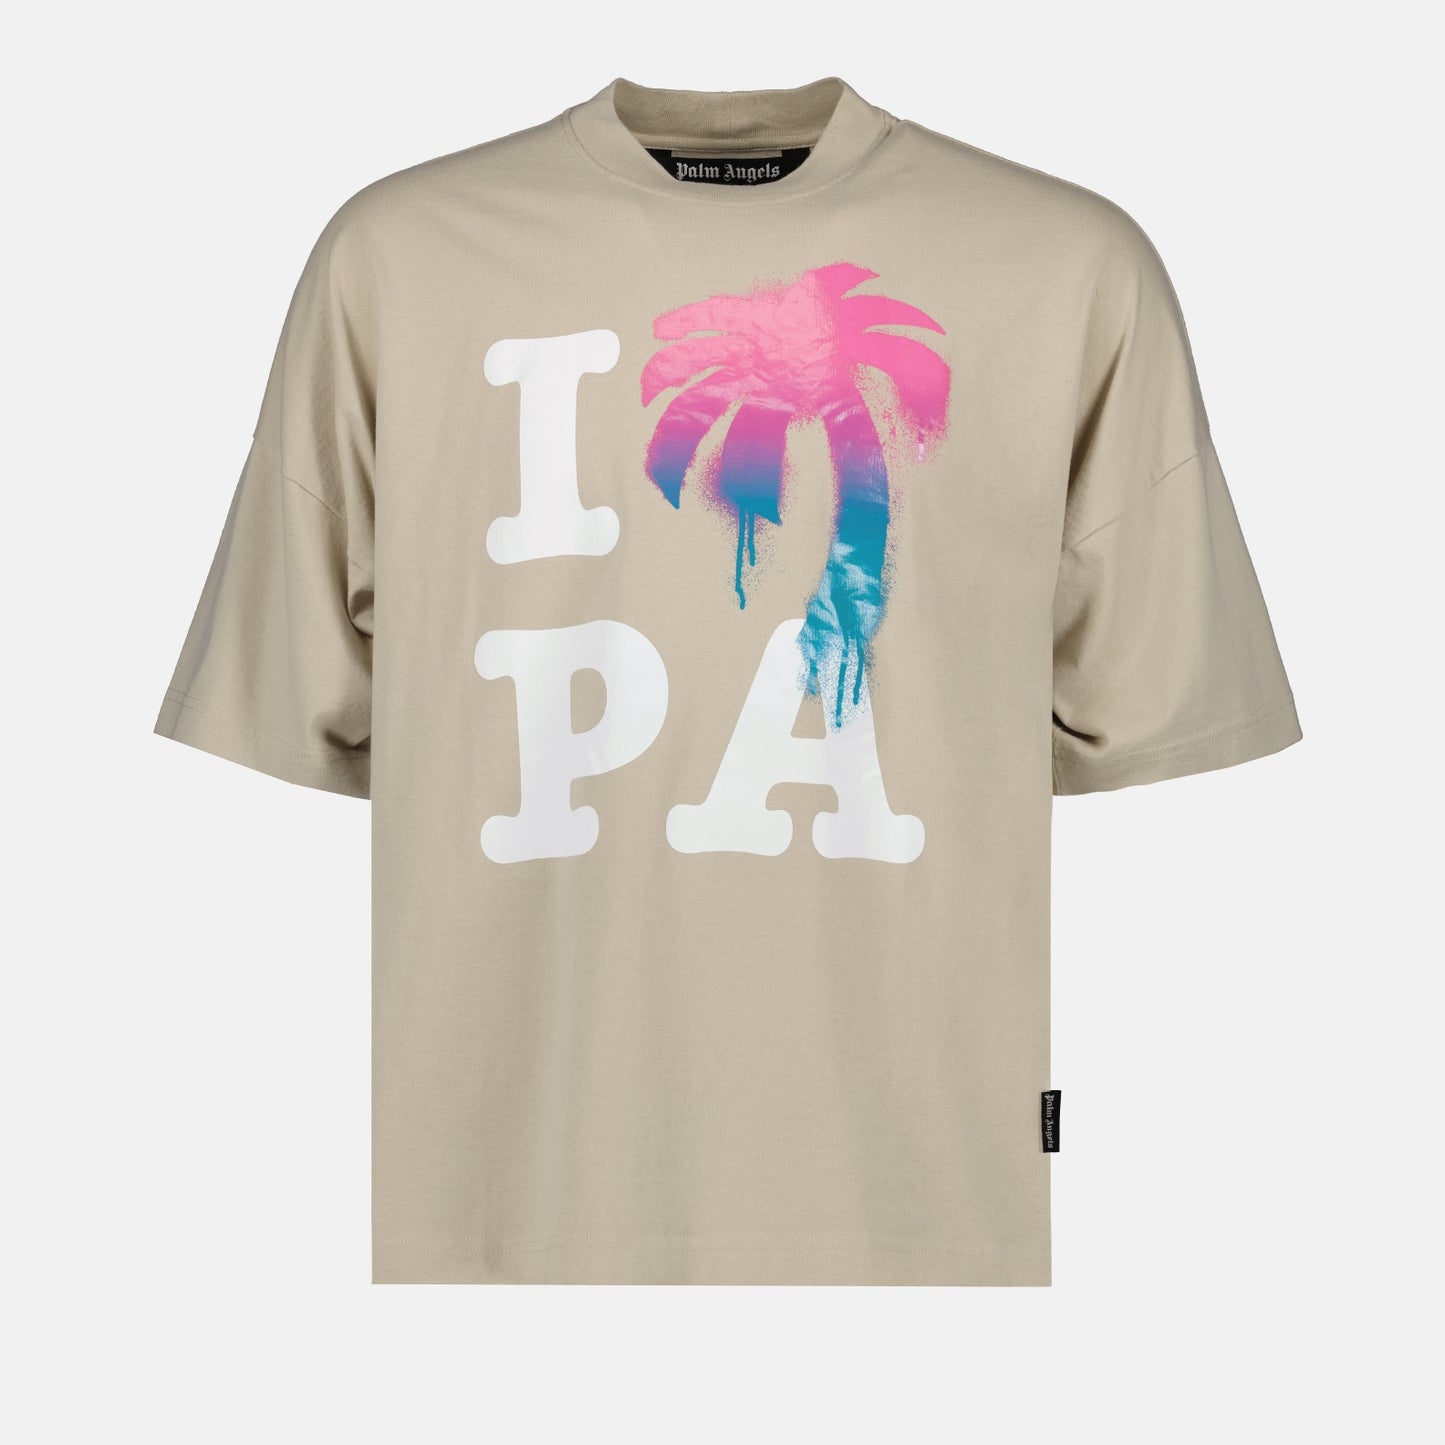 PAのTシャツが大好きです